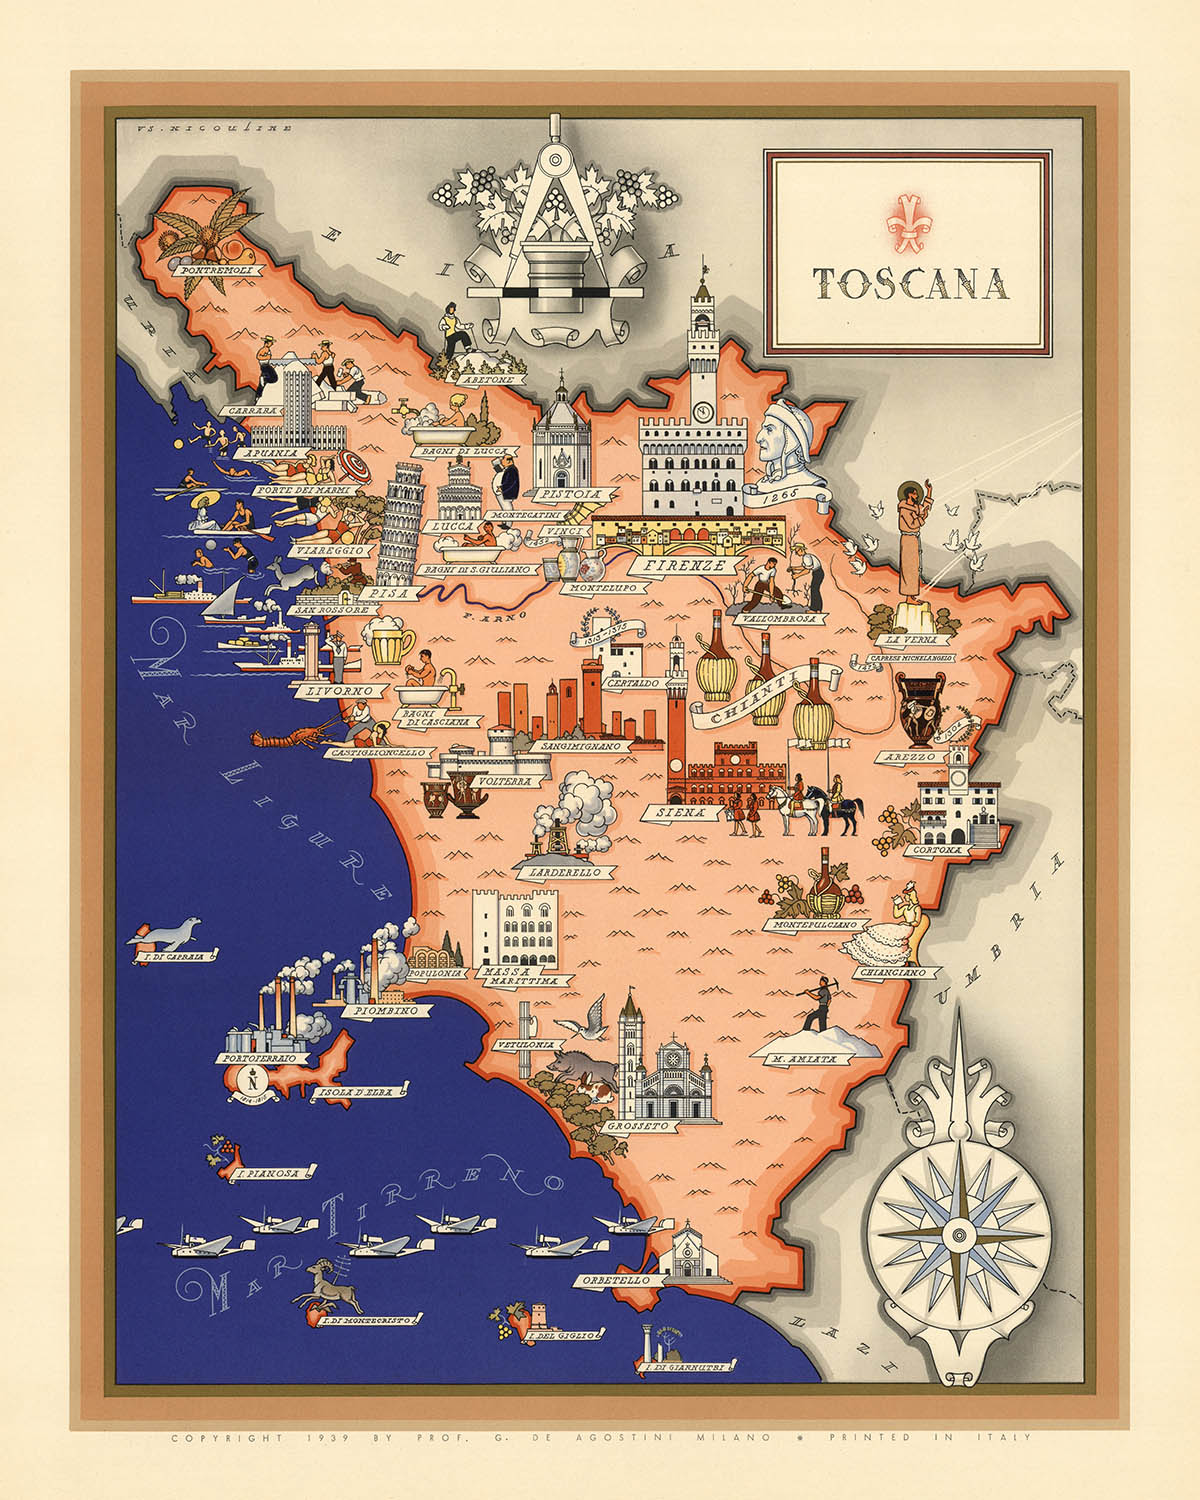 Alte Bildkarte der Toskana von De Agostini, 1938: Pisa, Florenz, Siena, Nationalpark Toskanischer Archipel, Nationalpark Foreste Casentinesi